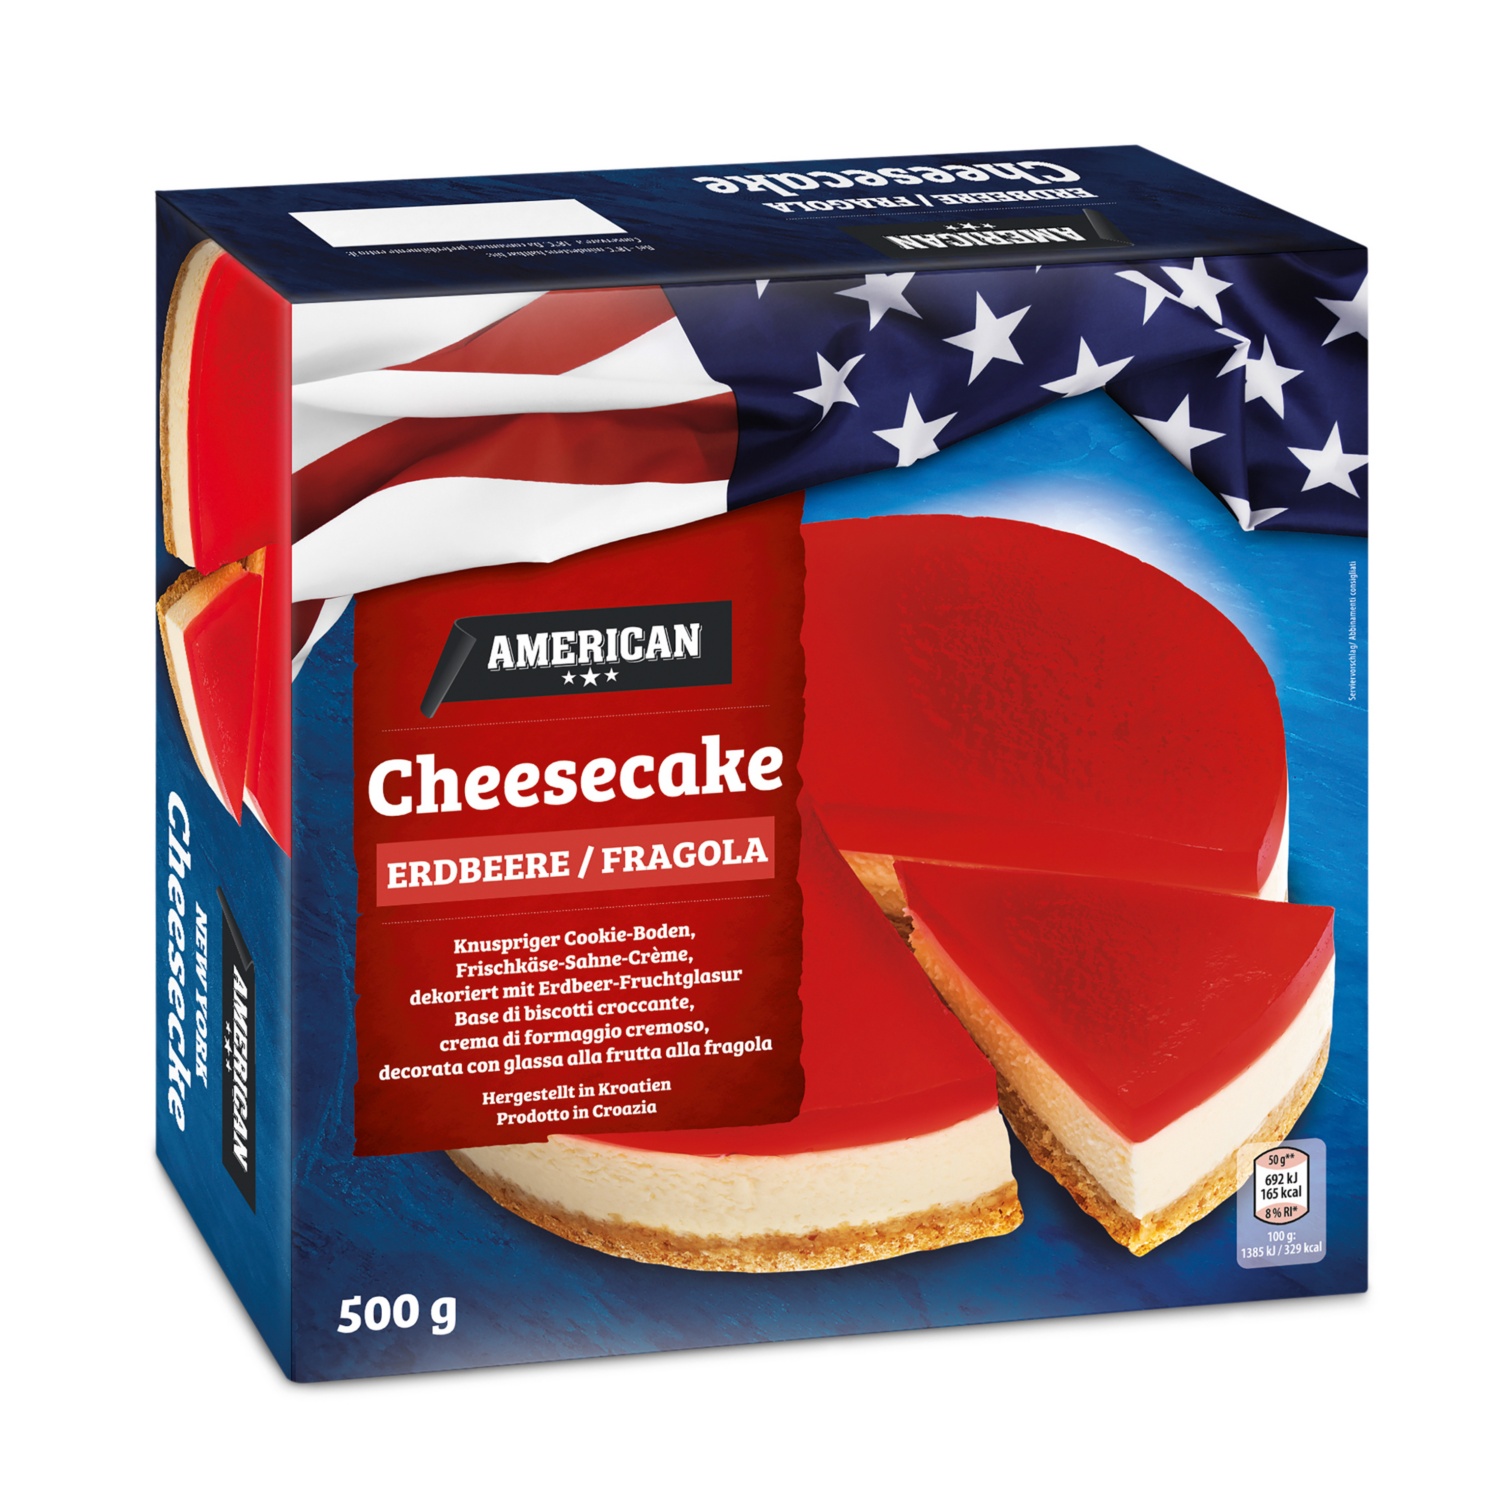 AMERICAN Cheesecake, Erdbeer